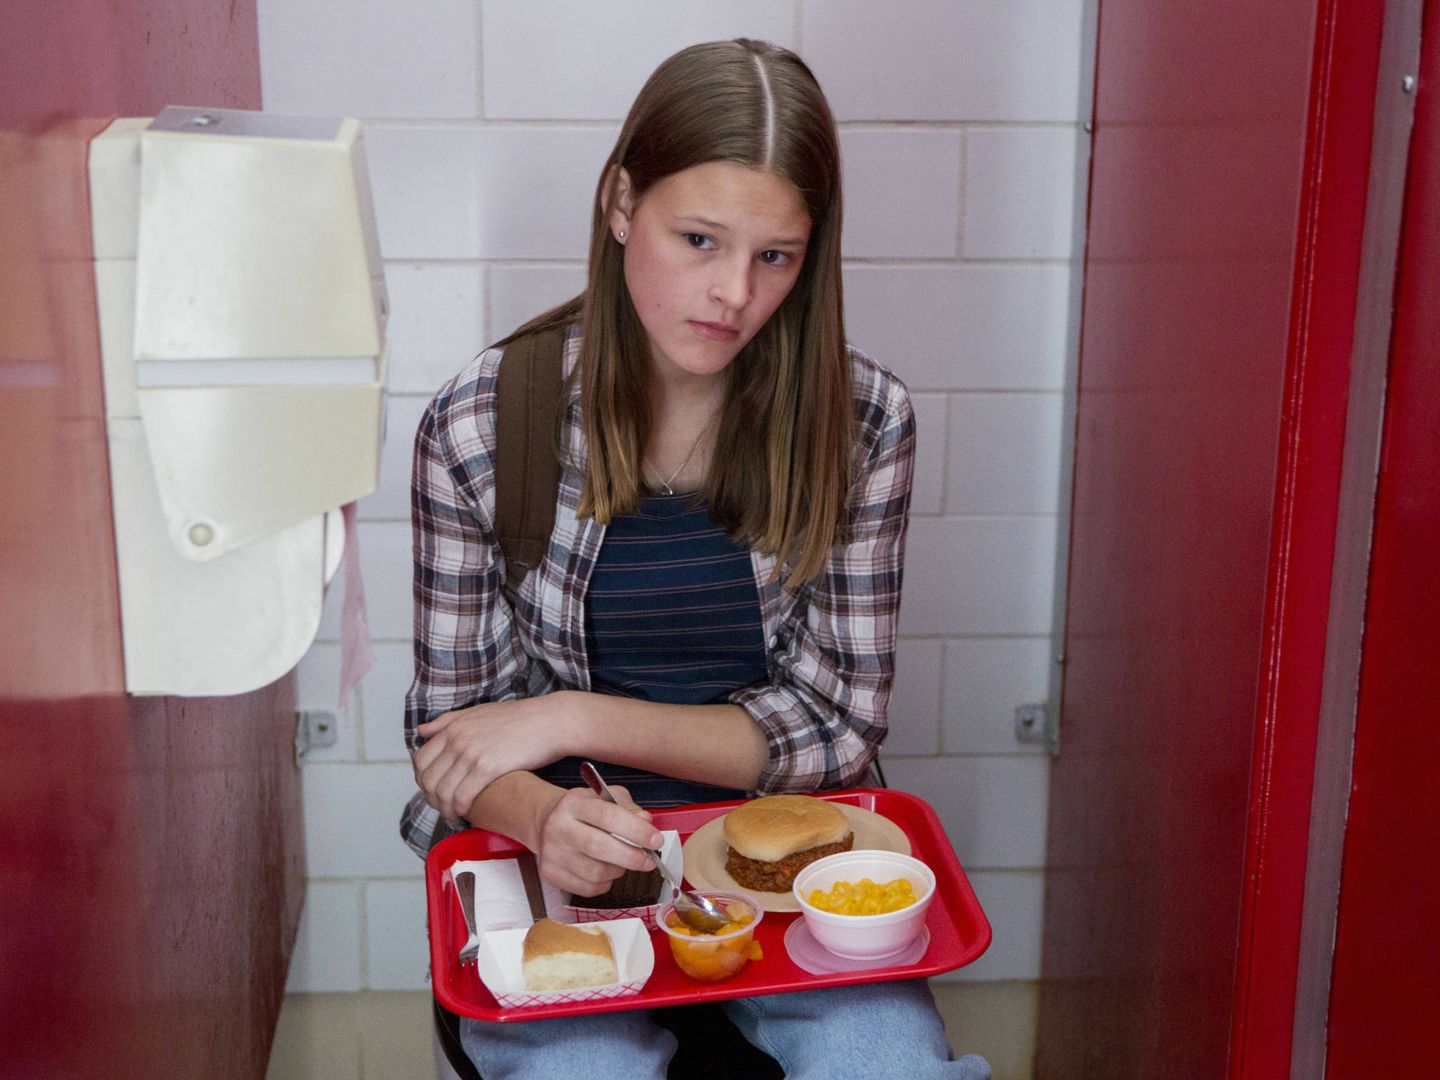 Comer dentro del baño porque sientes que el mundo te odia. (Netflix)